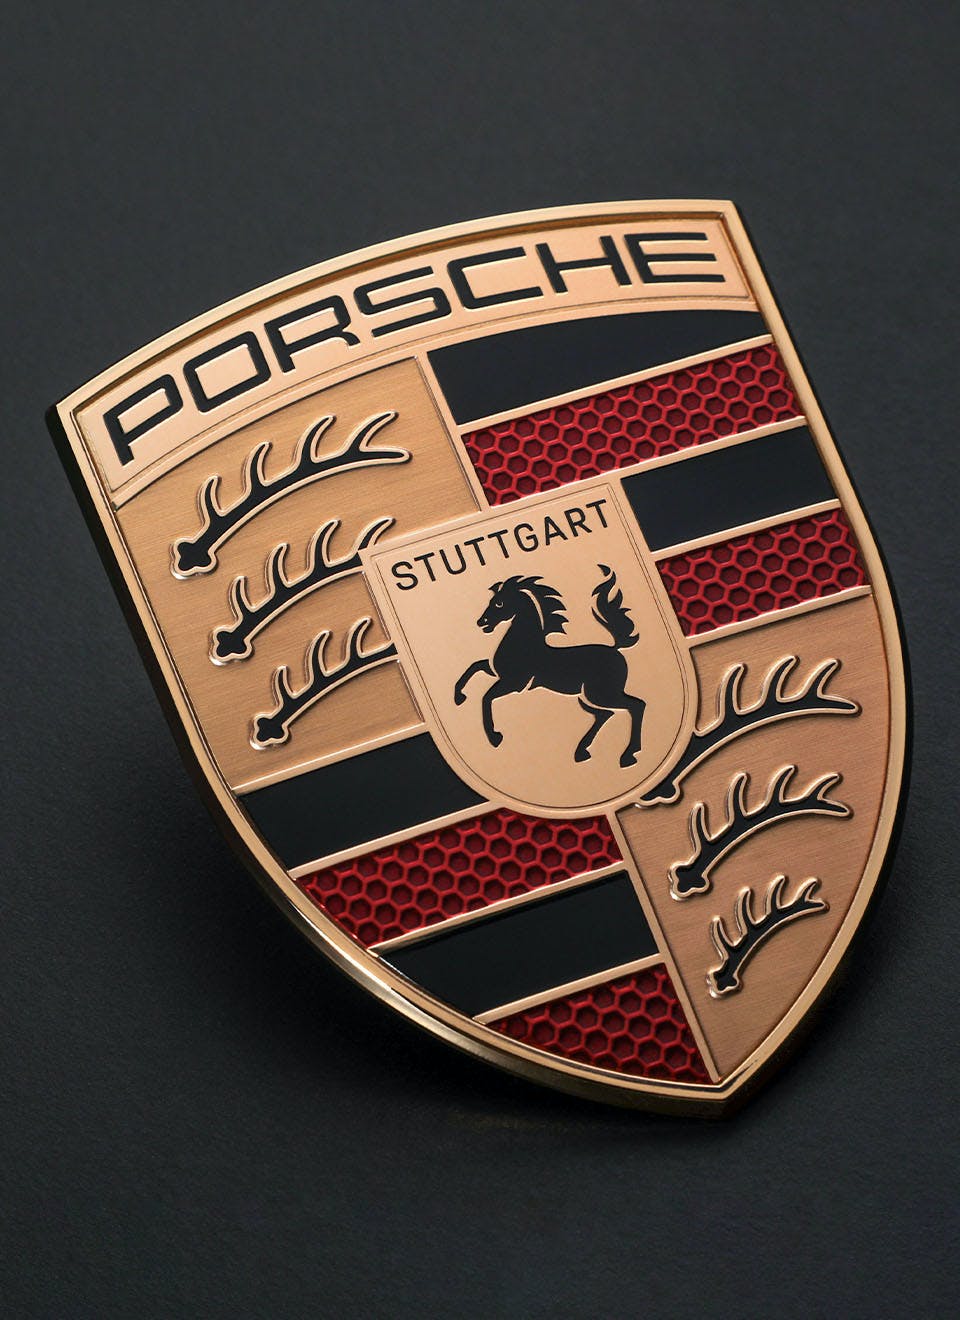 Excelencia de Servicio especializado en Porsche.